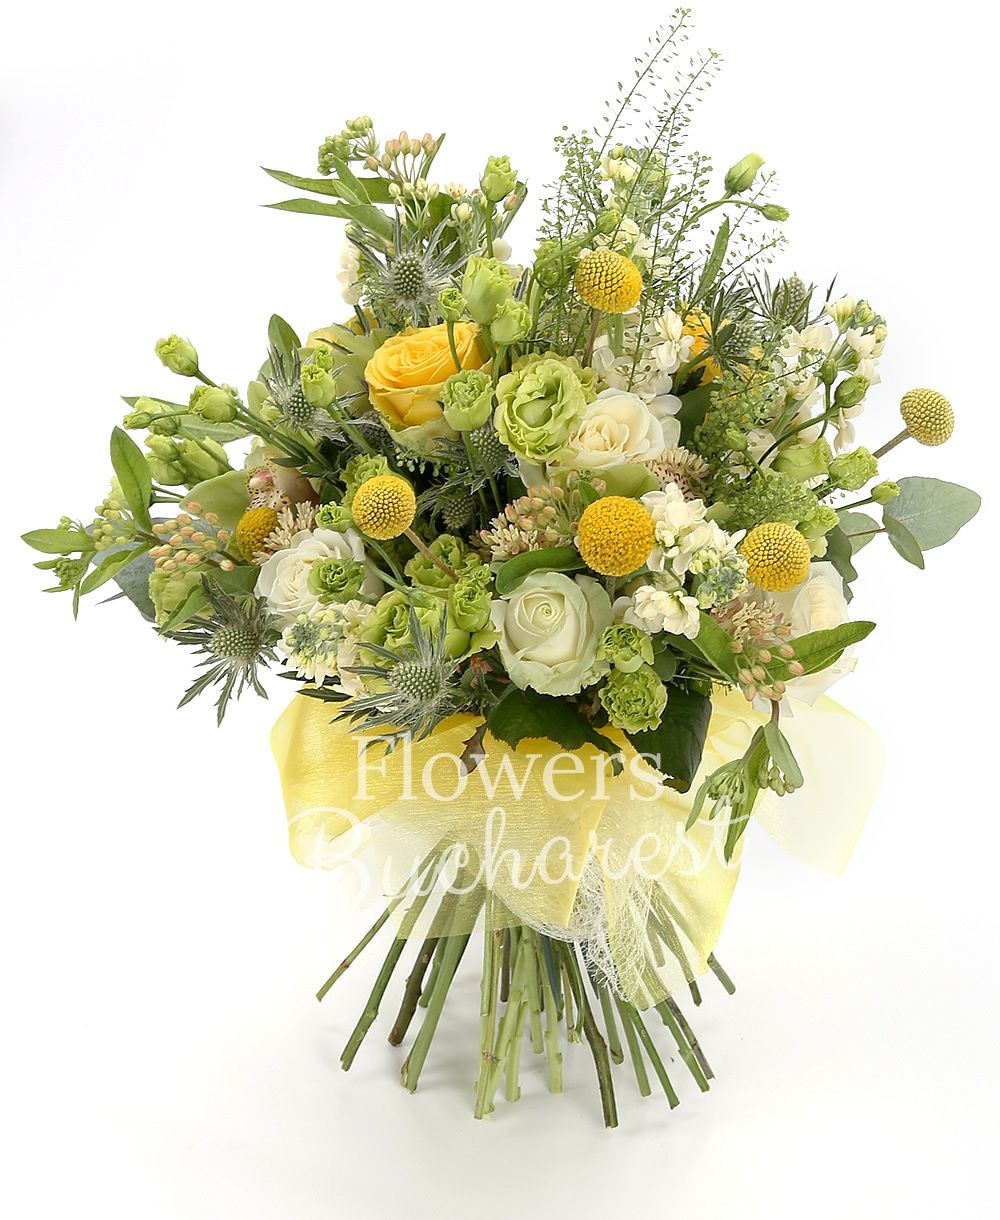 5 yellow craspedia, 3 white roses, 3 yellow roses, 5 green lisianthus, 5 white matthiola, 3 eryngium, green cymbidium, greenery